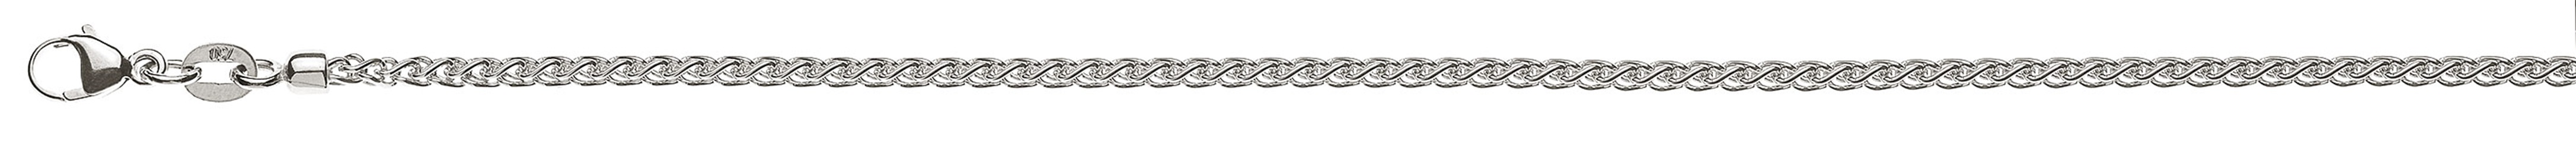 AURONOS Prestige Halskette Weissgold 18K Zopfkette 45cm 2.15mm